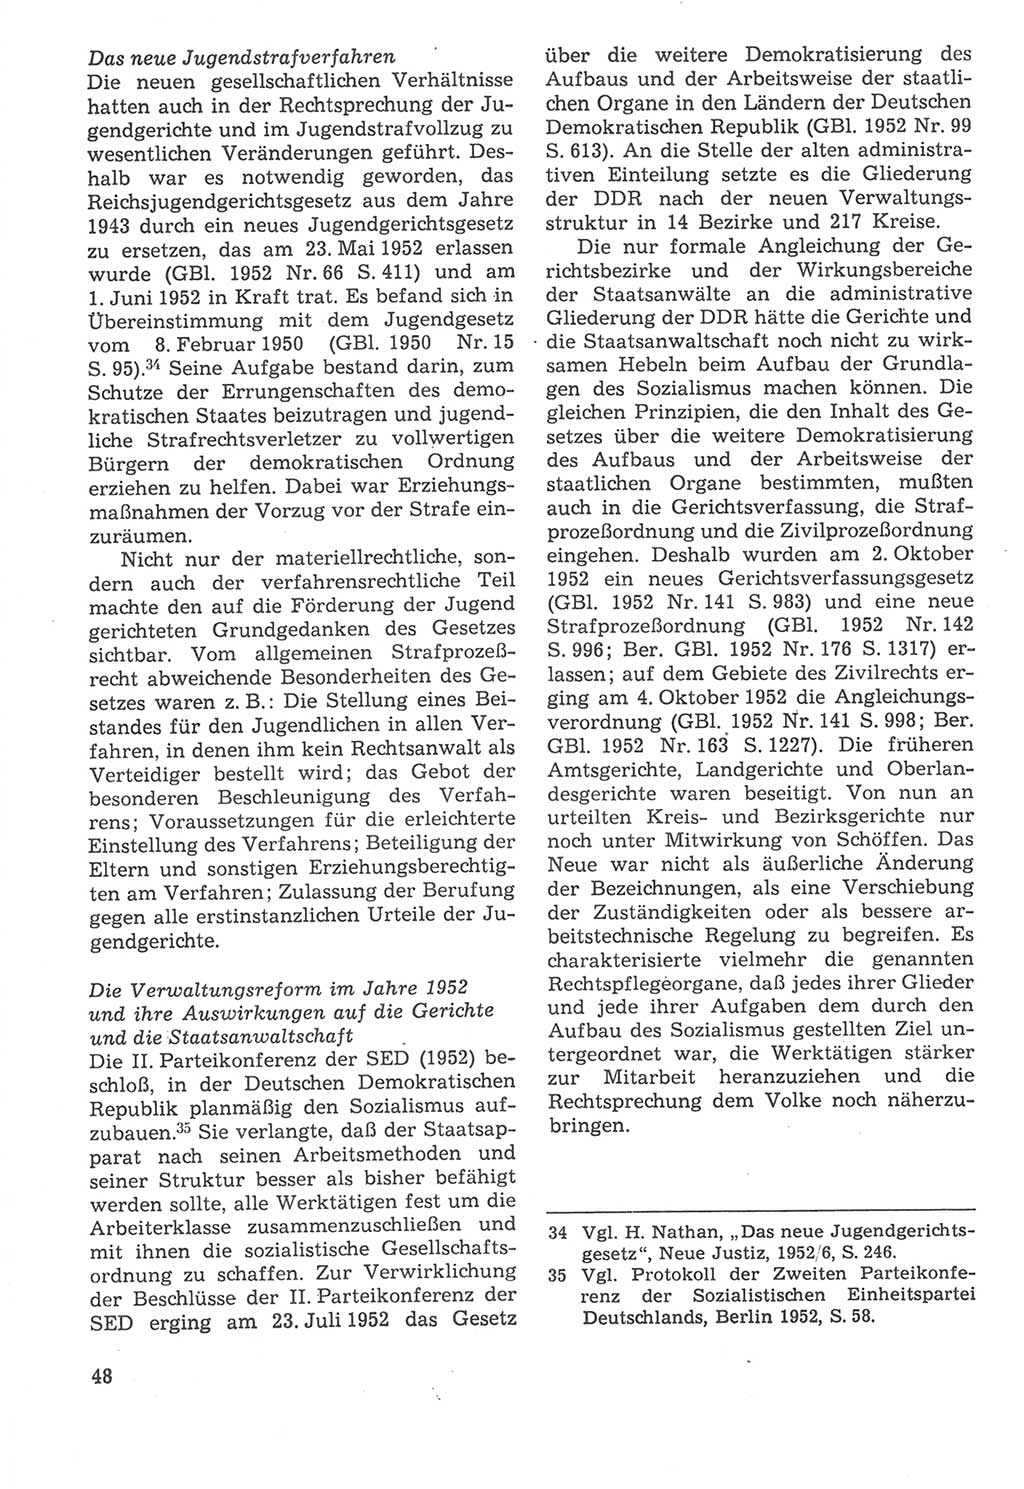 Strafverfahrensrecht [Deutsche Demokratische Republik (DDR)], Lehrbuch 1987, Seite 48 (Strafverf.-R. DDR Lb. 1987, S. 48)